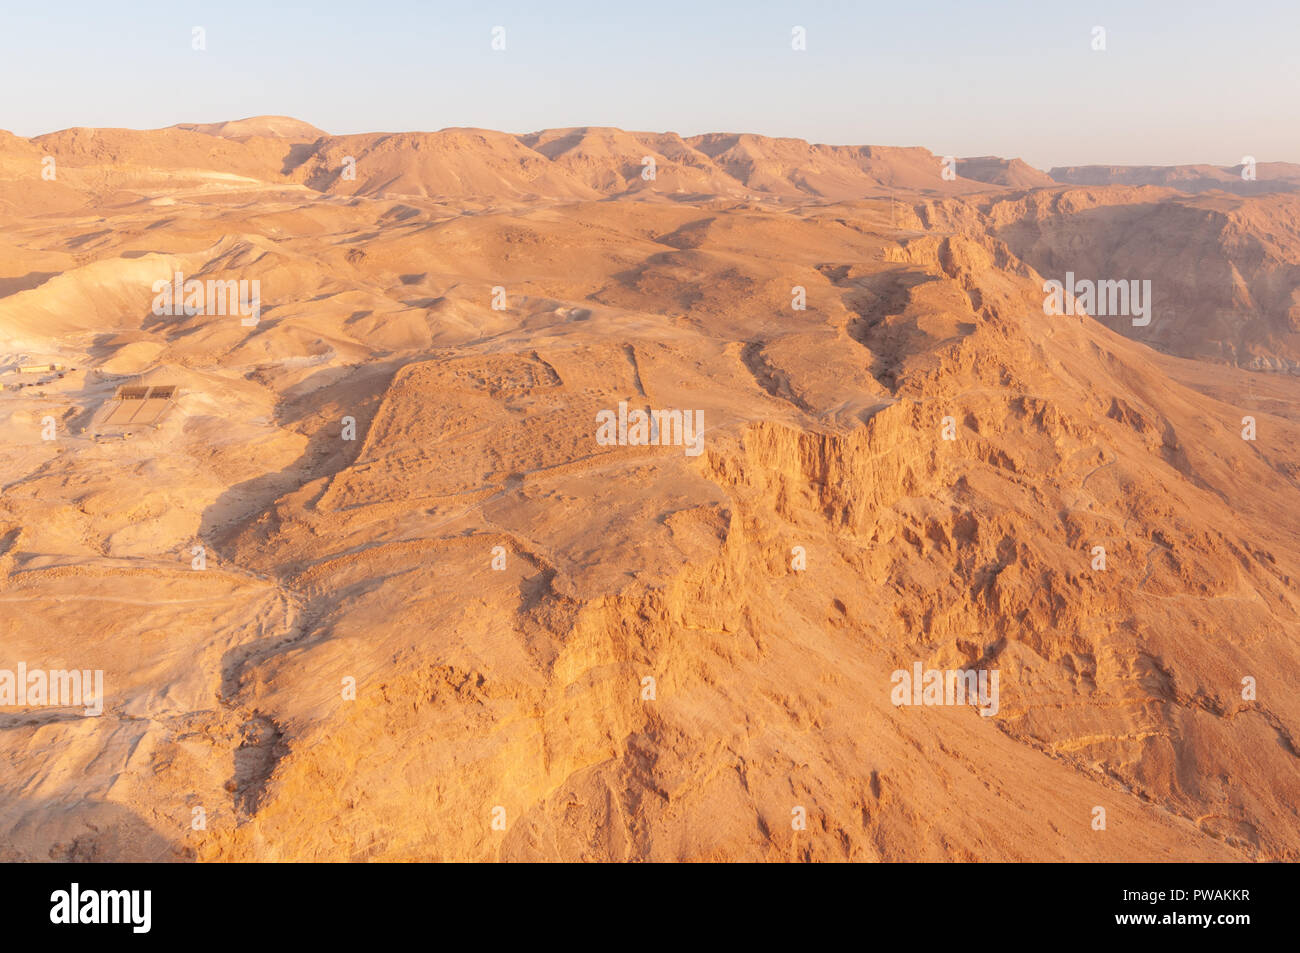 Deserted ruins in Israeli Desert near Dead Sea Stock Photo